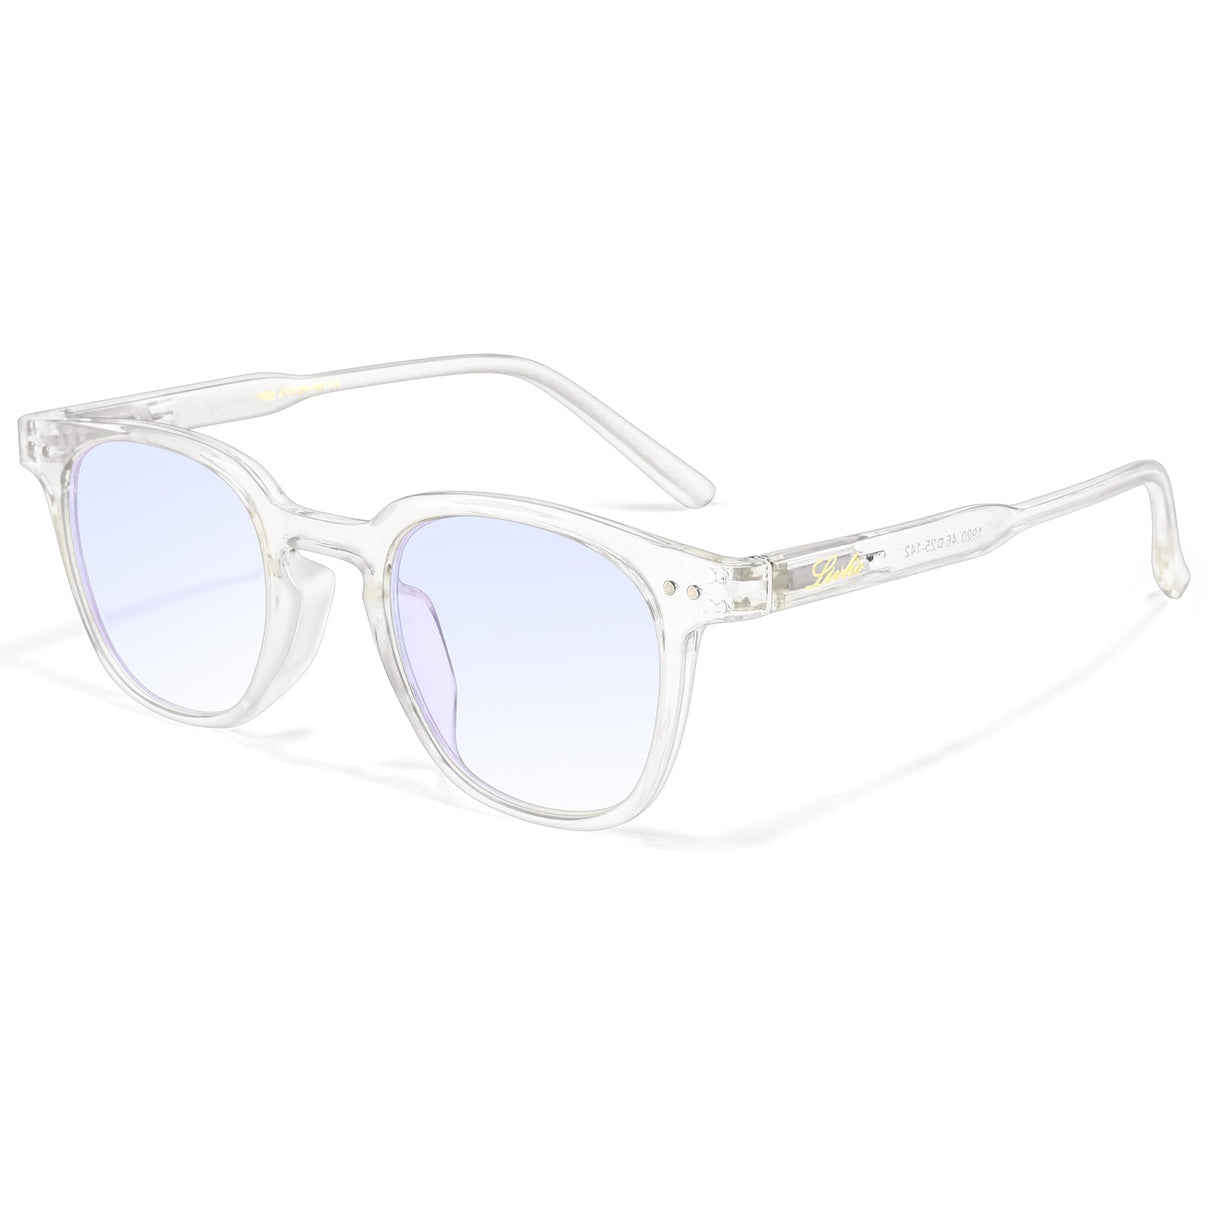 Kids Polarized Retro Sunglasses for Boys Girls Age 3-12 Shatterproof UV  Protection Toddler Children Sun Glasses